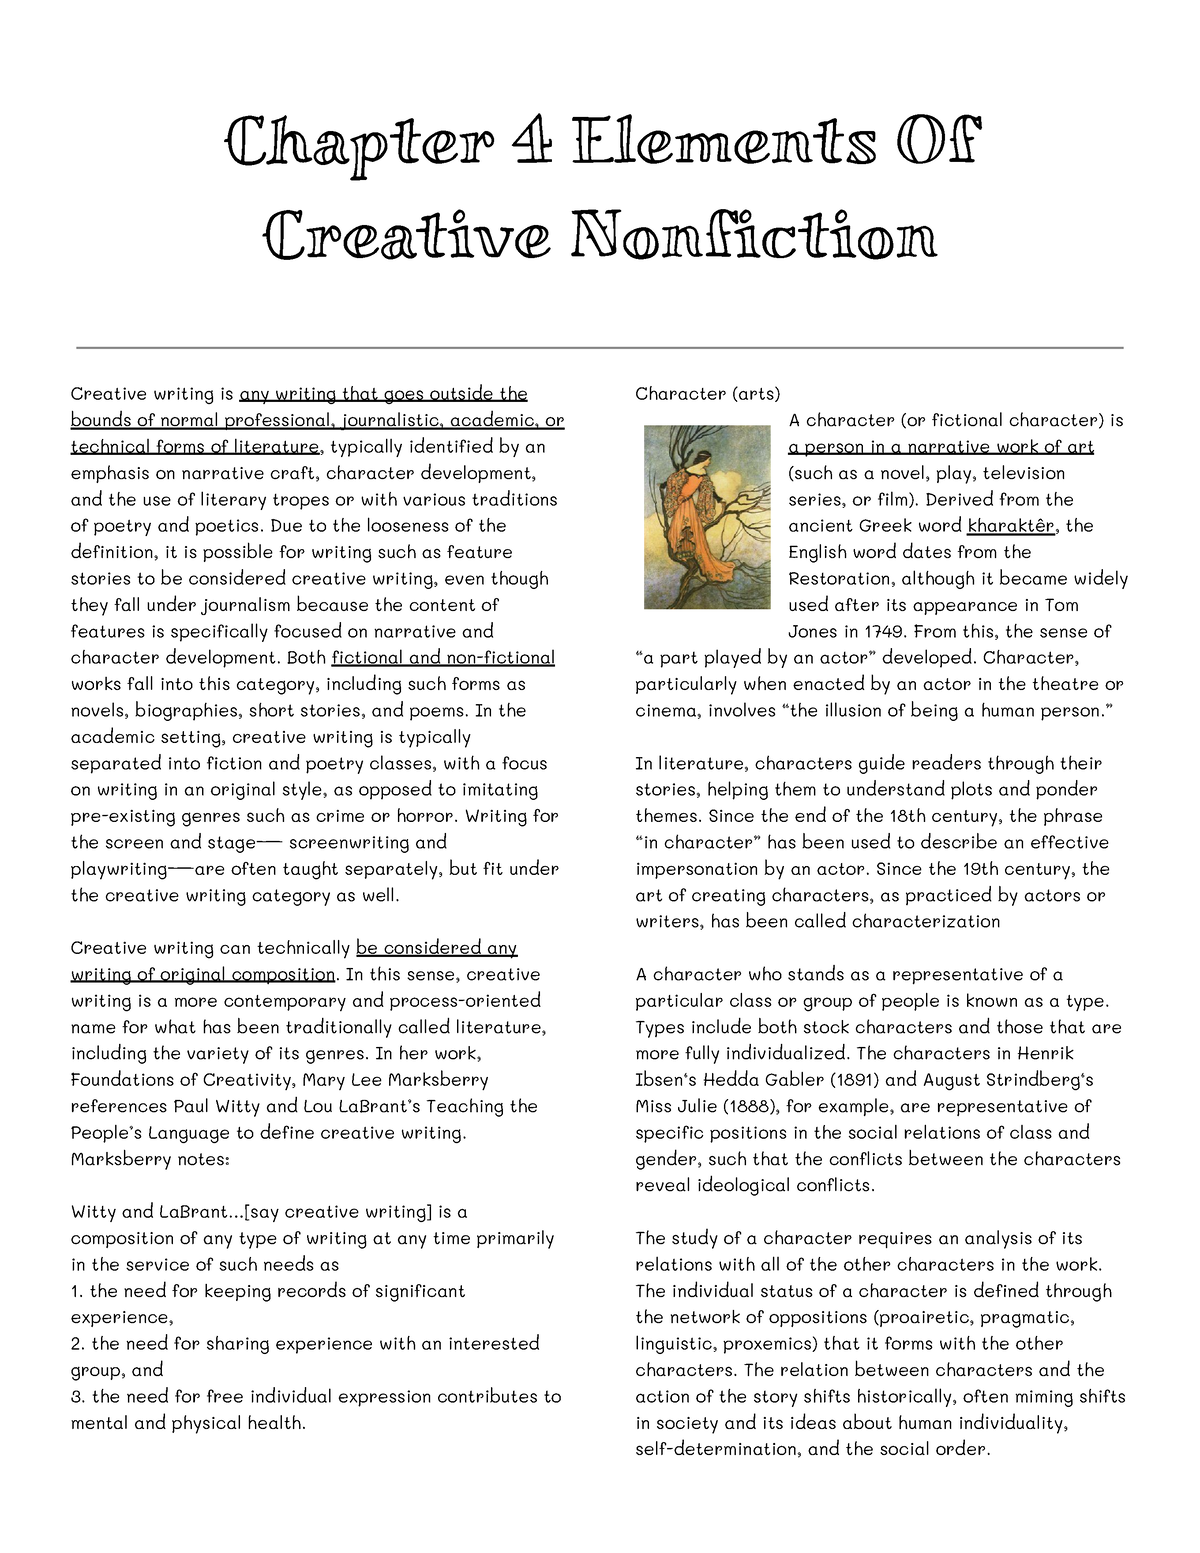 creative non fiction biography